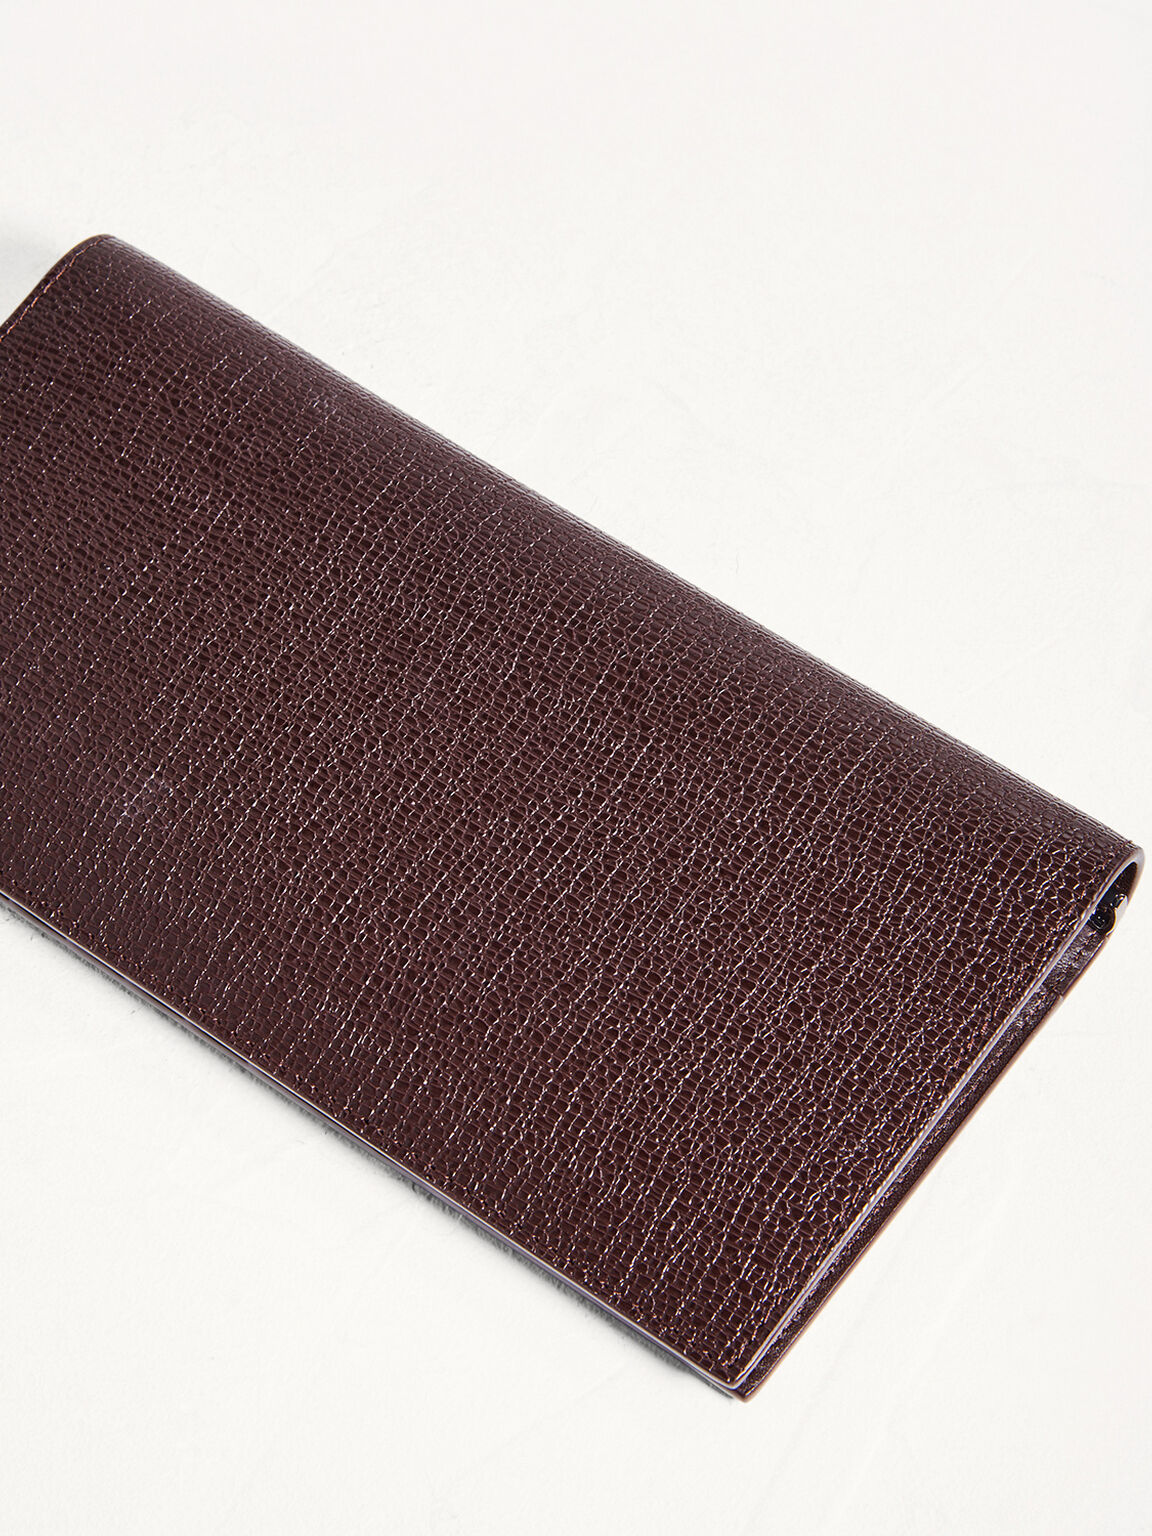 Leather Long Wallet, Dark Brown